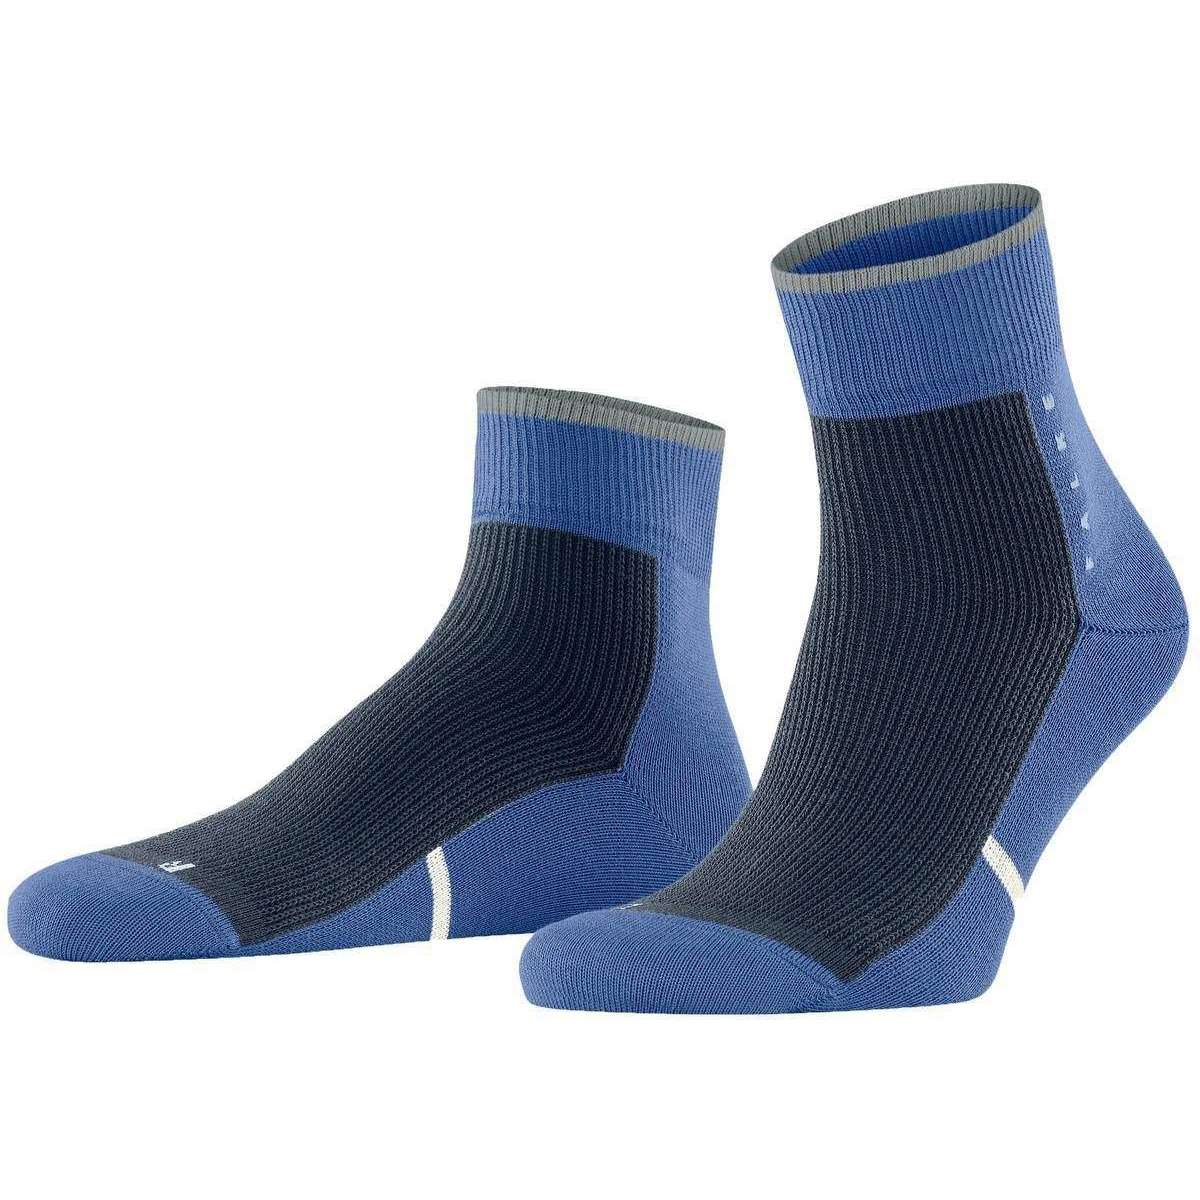 Falke Versatile Socks - Olympic Blue